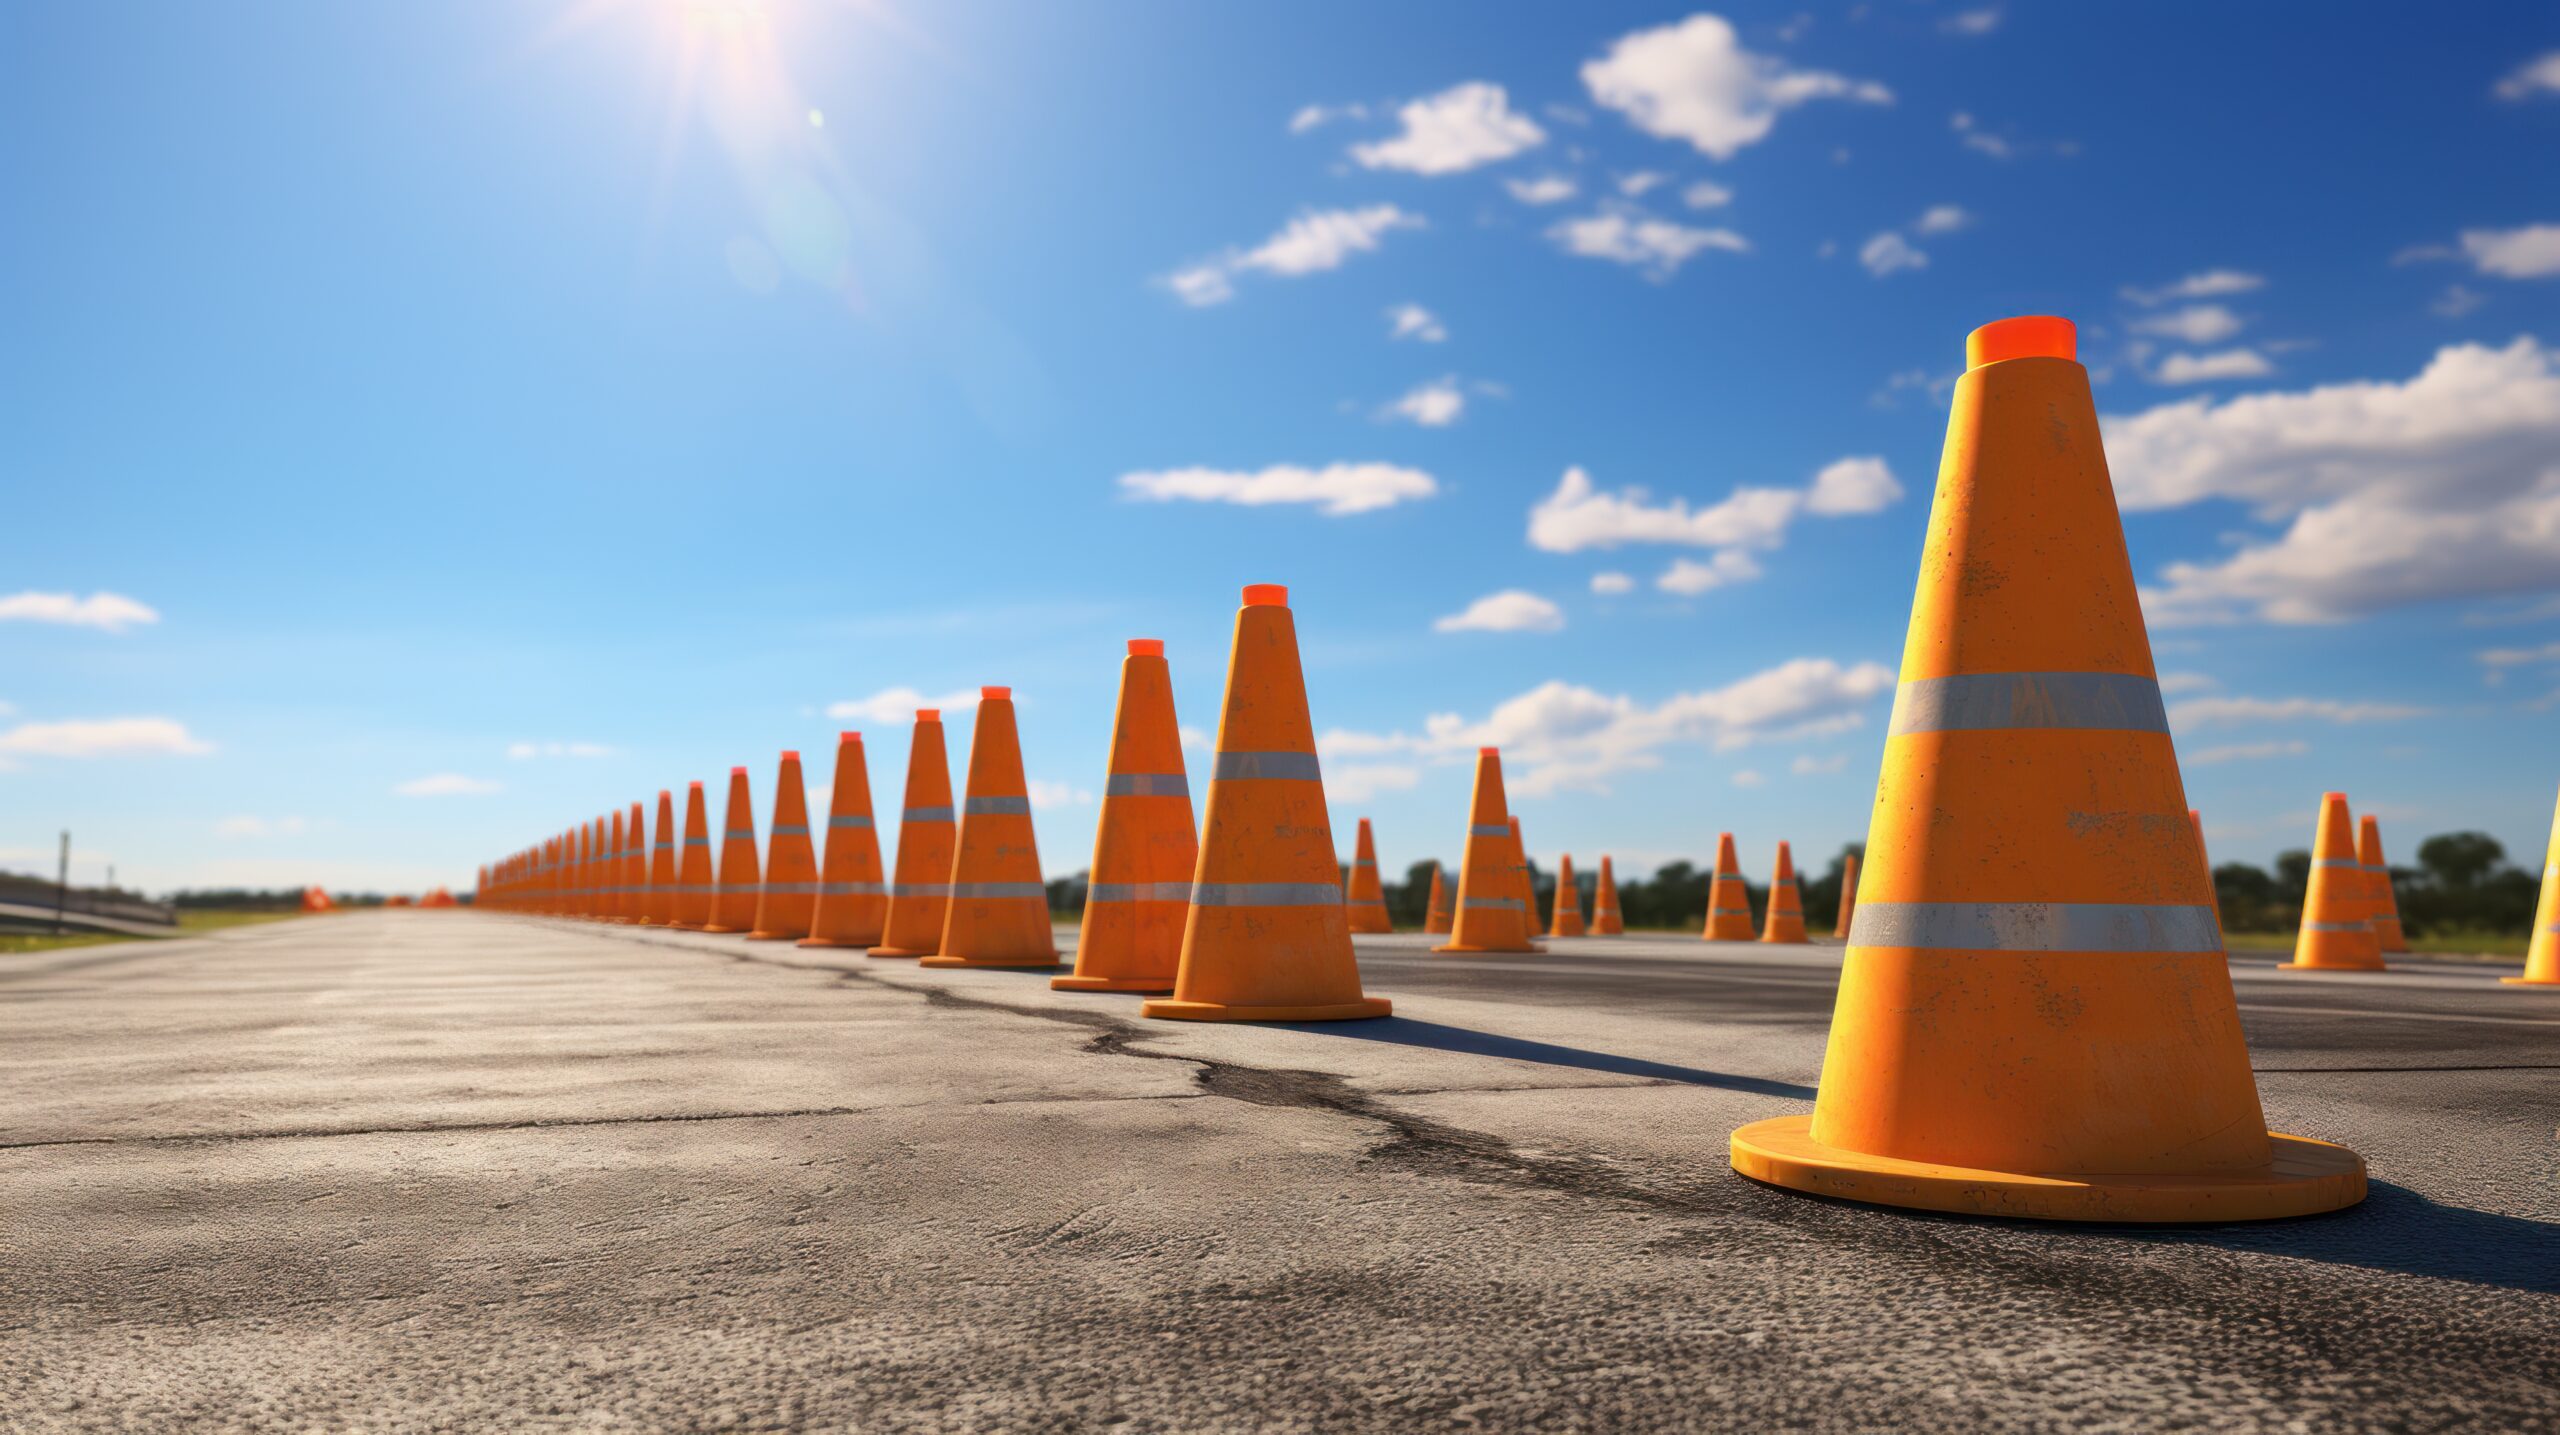 Traffic cones line up along sunlit asphalt road.